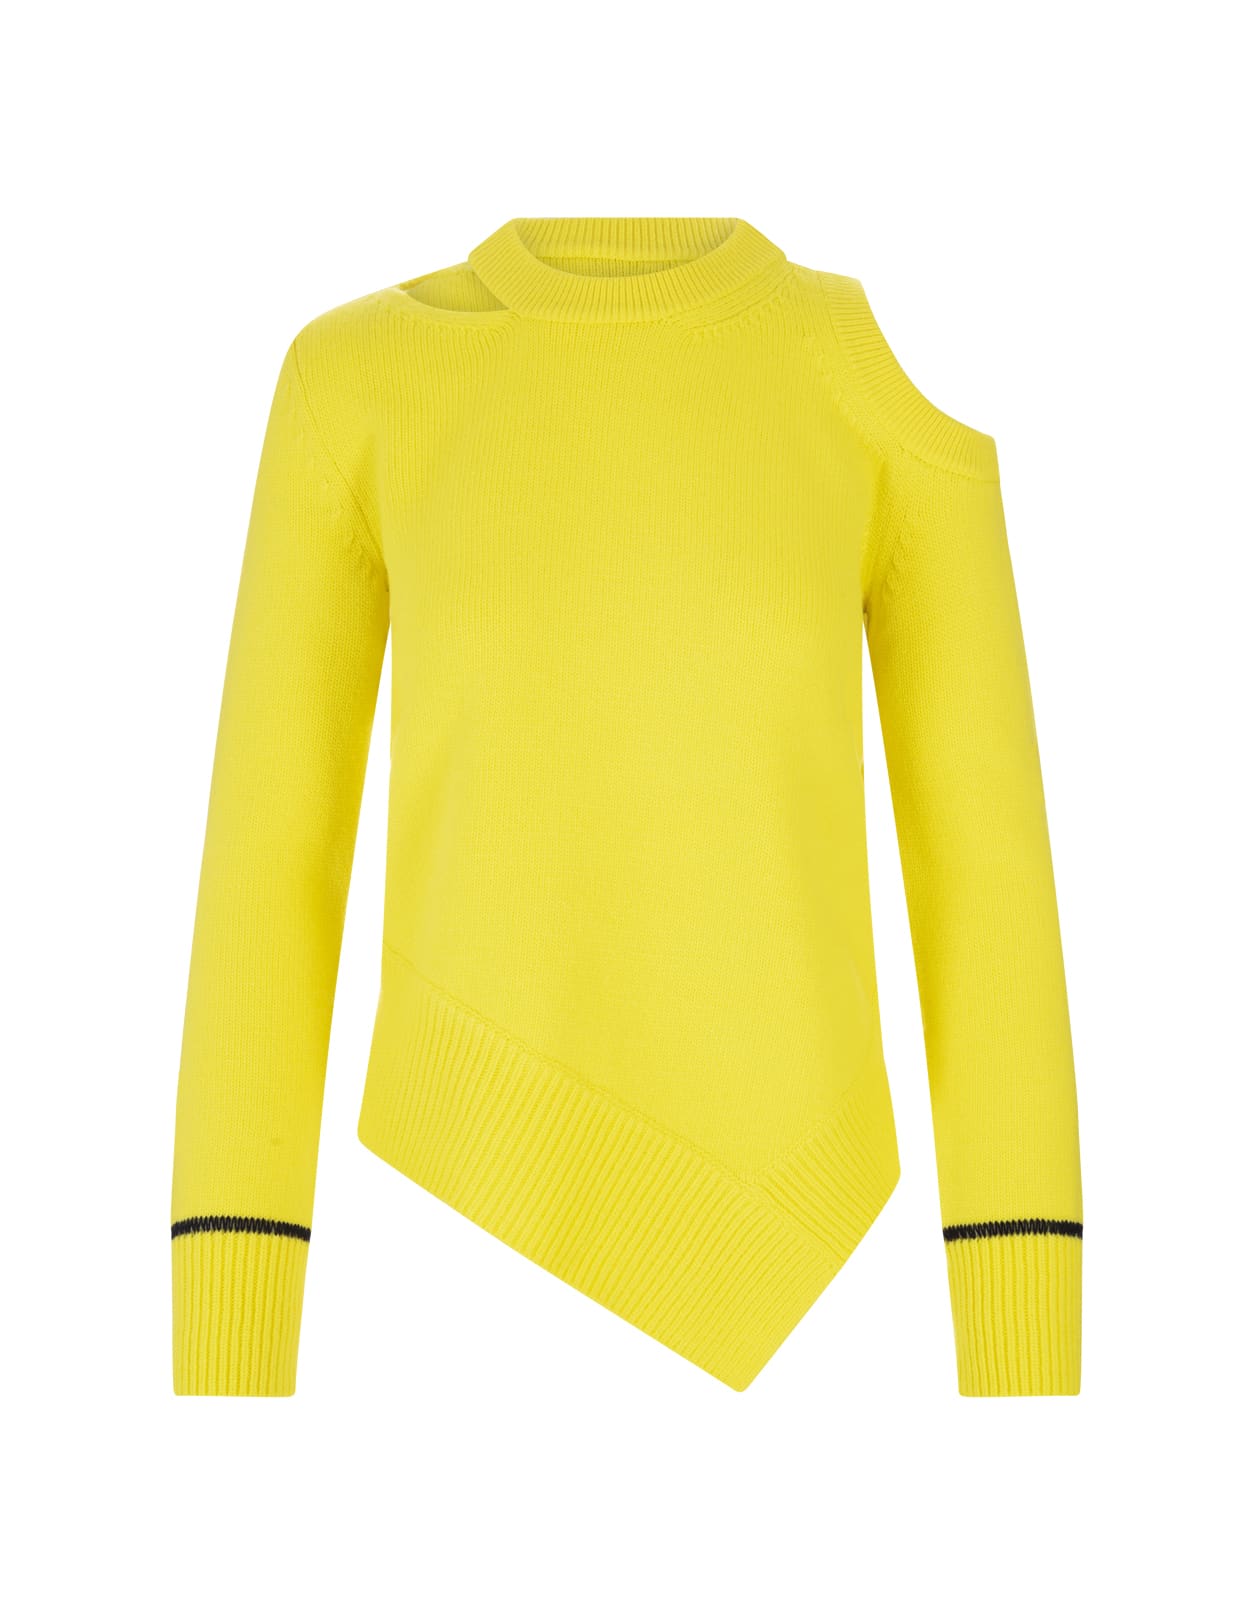 Alexander McQueen Woman Yellow Asymmetrical Cutwork Sweater